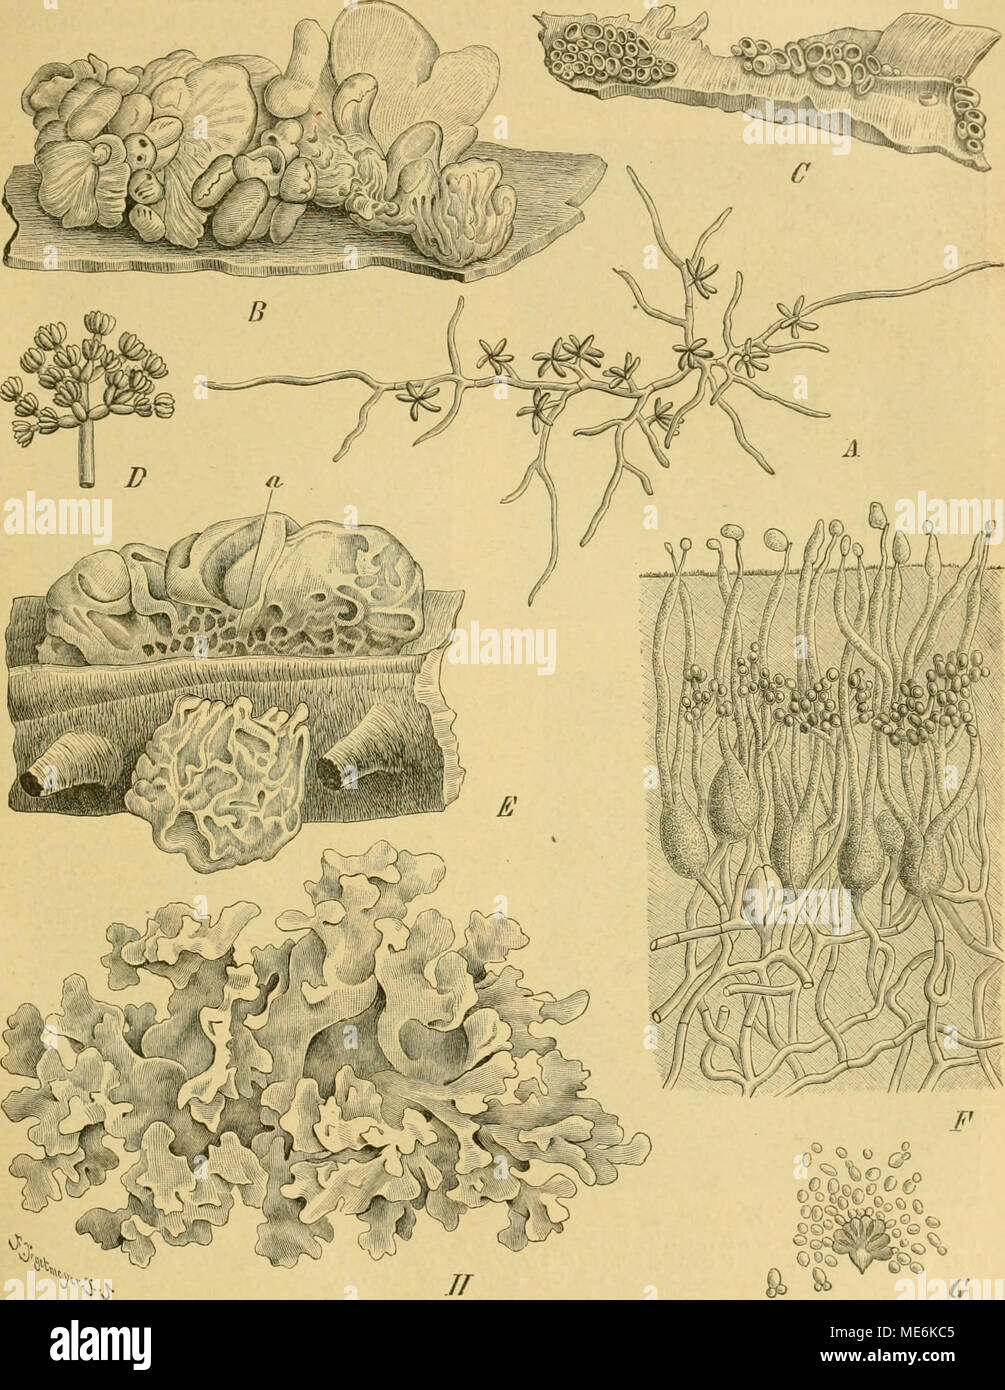 . Die Natürlichen Pflanzenfamilien nebst ihren Gattungen und wichtigeren Arten, insbesondere den Nutzpflanzen, unter Mitwirkung zahlreicher hervorragender Fachgelehrten begründet . Fig. 60. Ä UlocoUa foliacia (Pers.) Bref. Conidientragendes Mycel 320(1. B—D Craterocolla Cerasi (Schum.) Bref. B Basidienfruchtkörper nat. Gr. C ConidienfruchtkOrper nat. Gr. D Conidienträger 300(1. E—G Tremella lutescens Pers. Fruchtkörper nat. Gr. bei a Kaste des Conidienlagers. F Schnitt durch das Hymenium 450(1. 0 Spross- conidien 400|]. H T. fuciformis Berk. Habitus nat. Gr, (Ä nach Möller, das übrige nach Bre Stock Photo